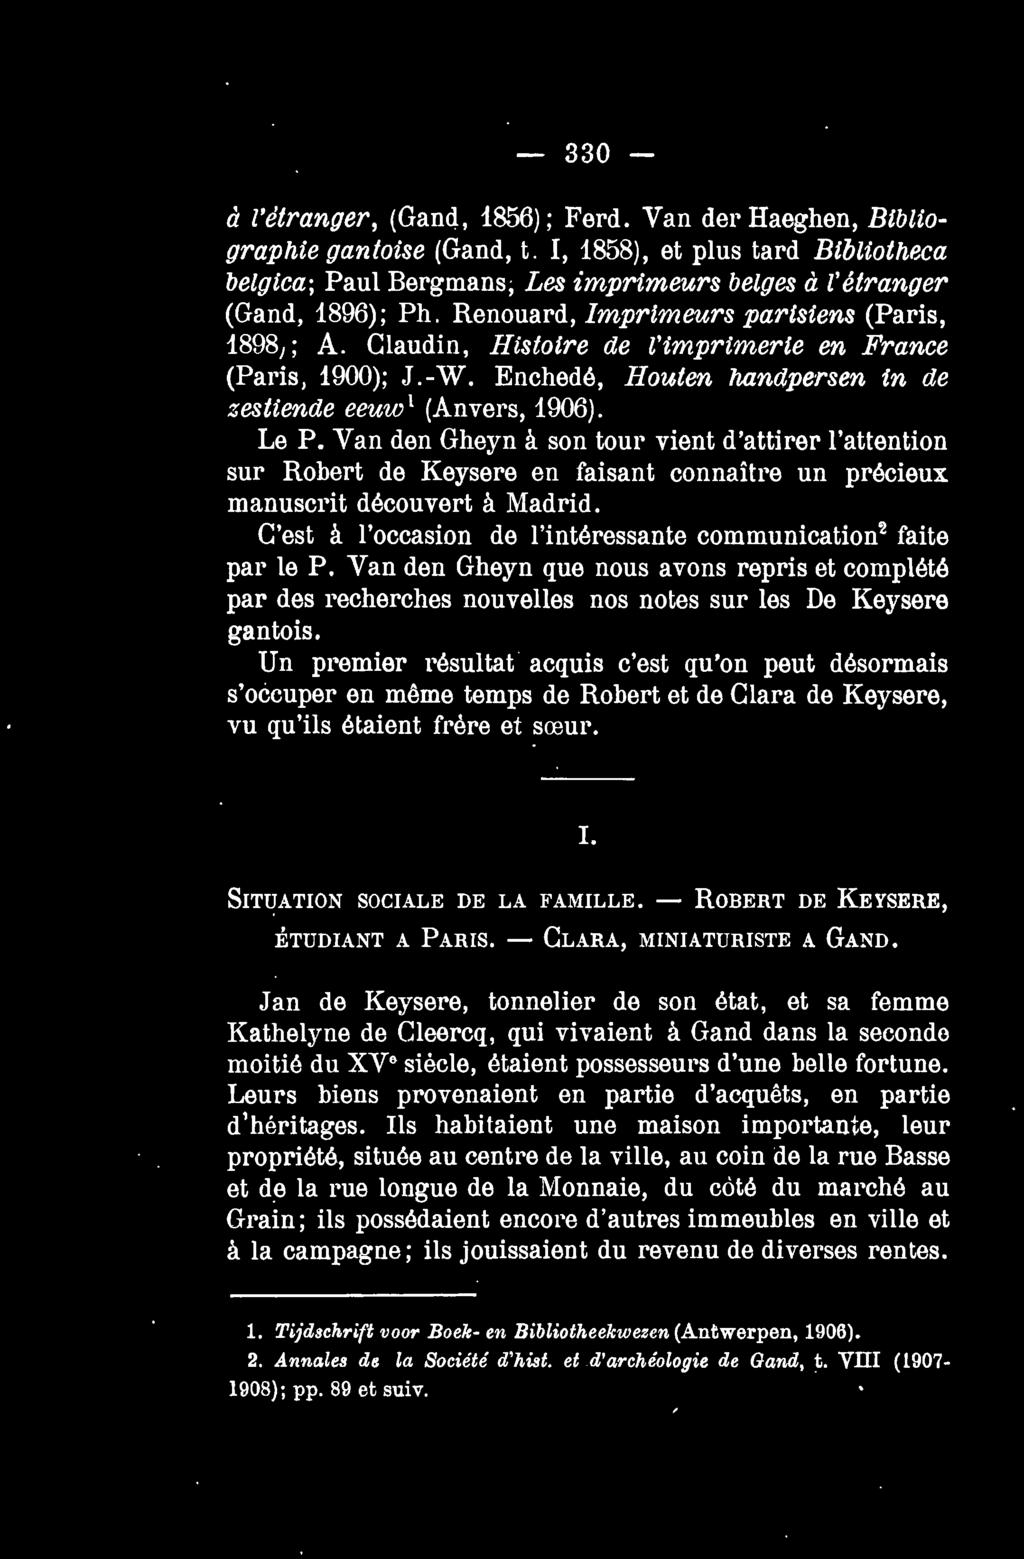 - 330 - a l'etranger, (Gand, 1856); Ferd. Van der Haeghen, Bibliographie gantoise (Gand, t.